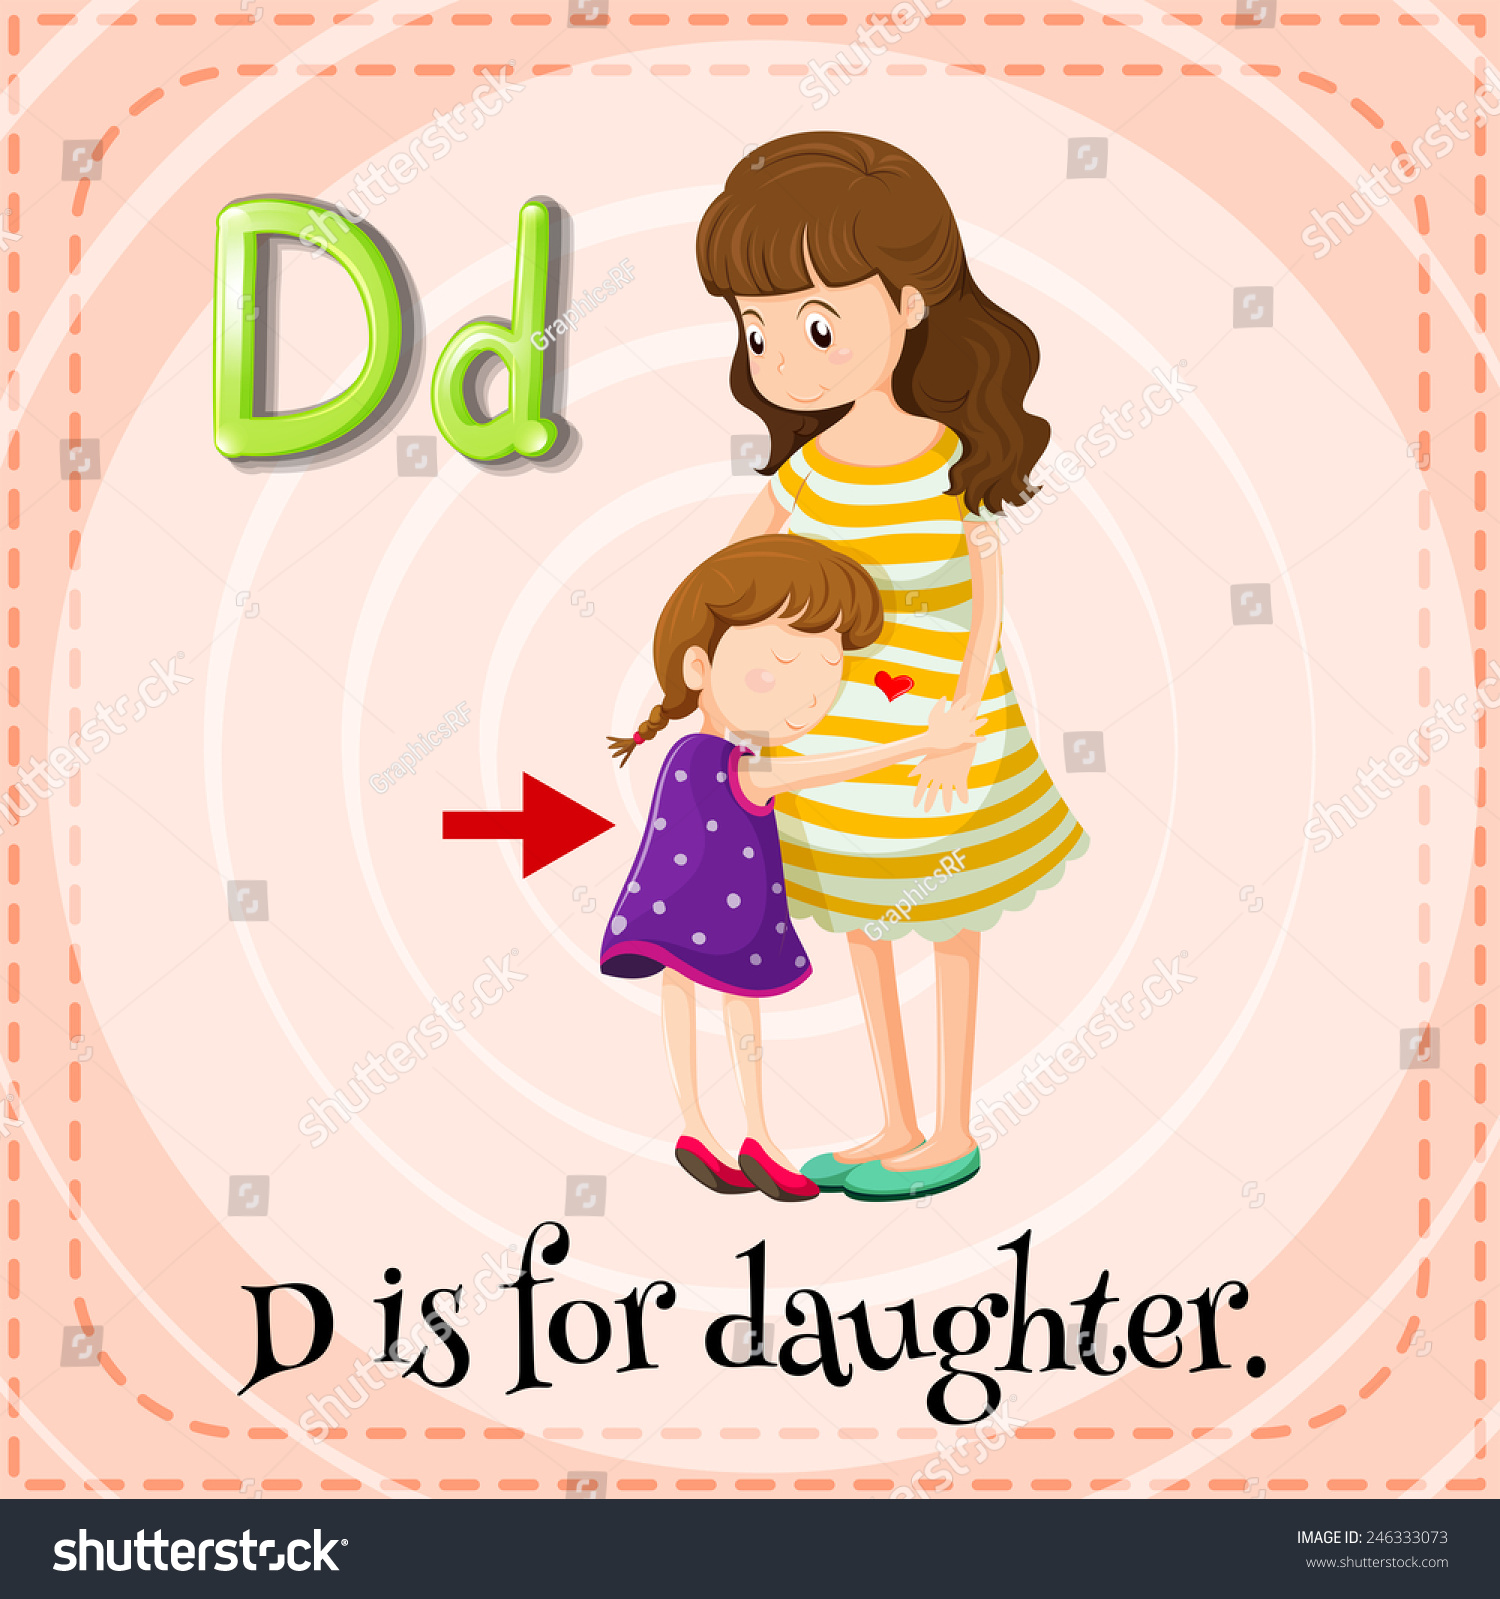 D daughter